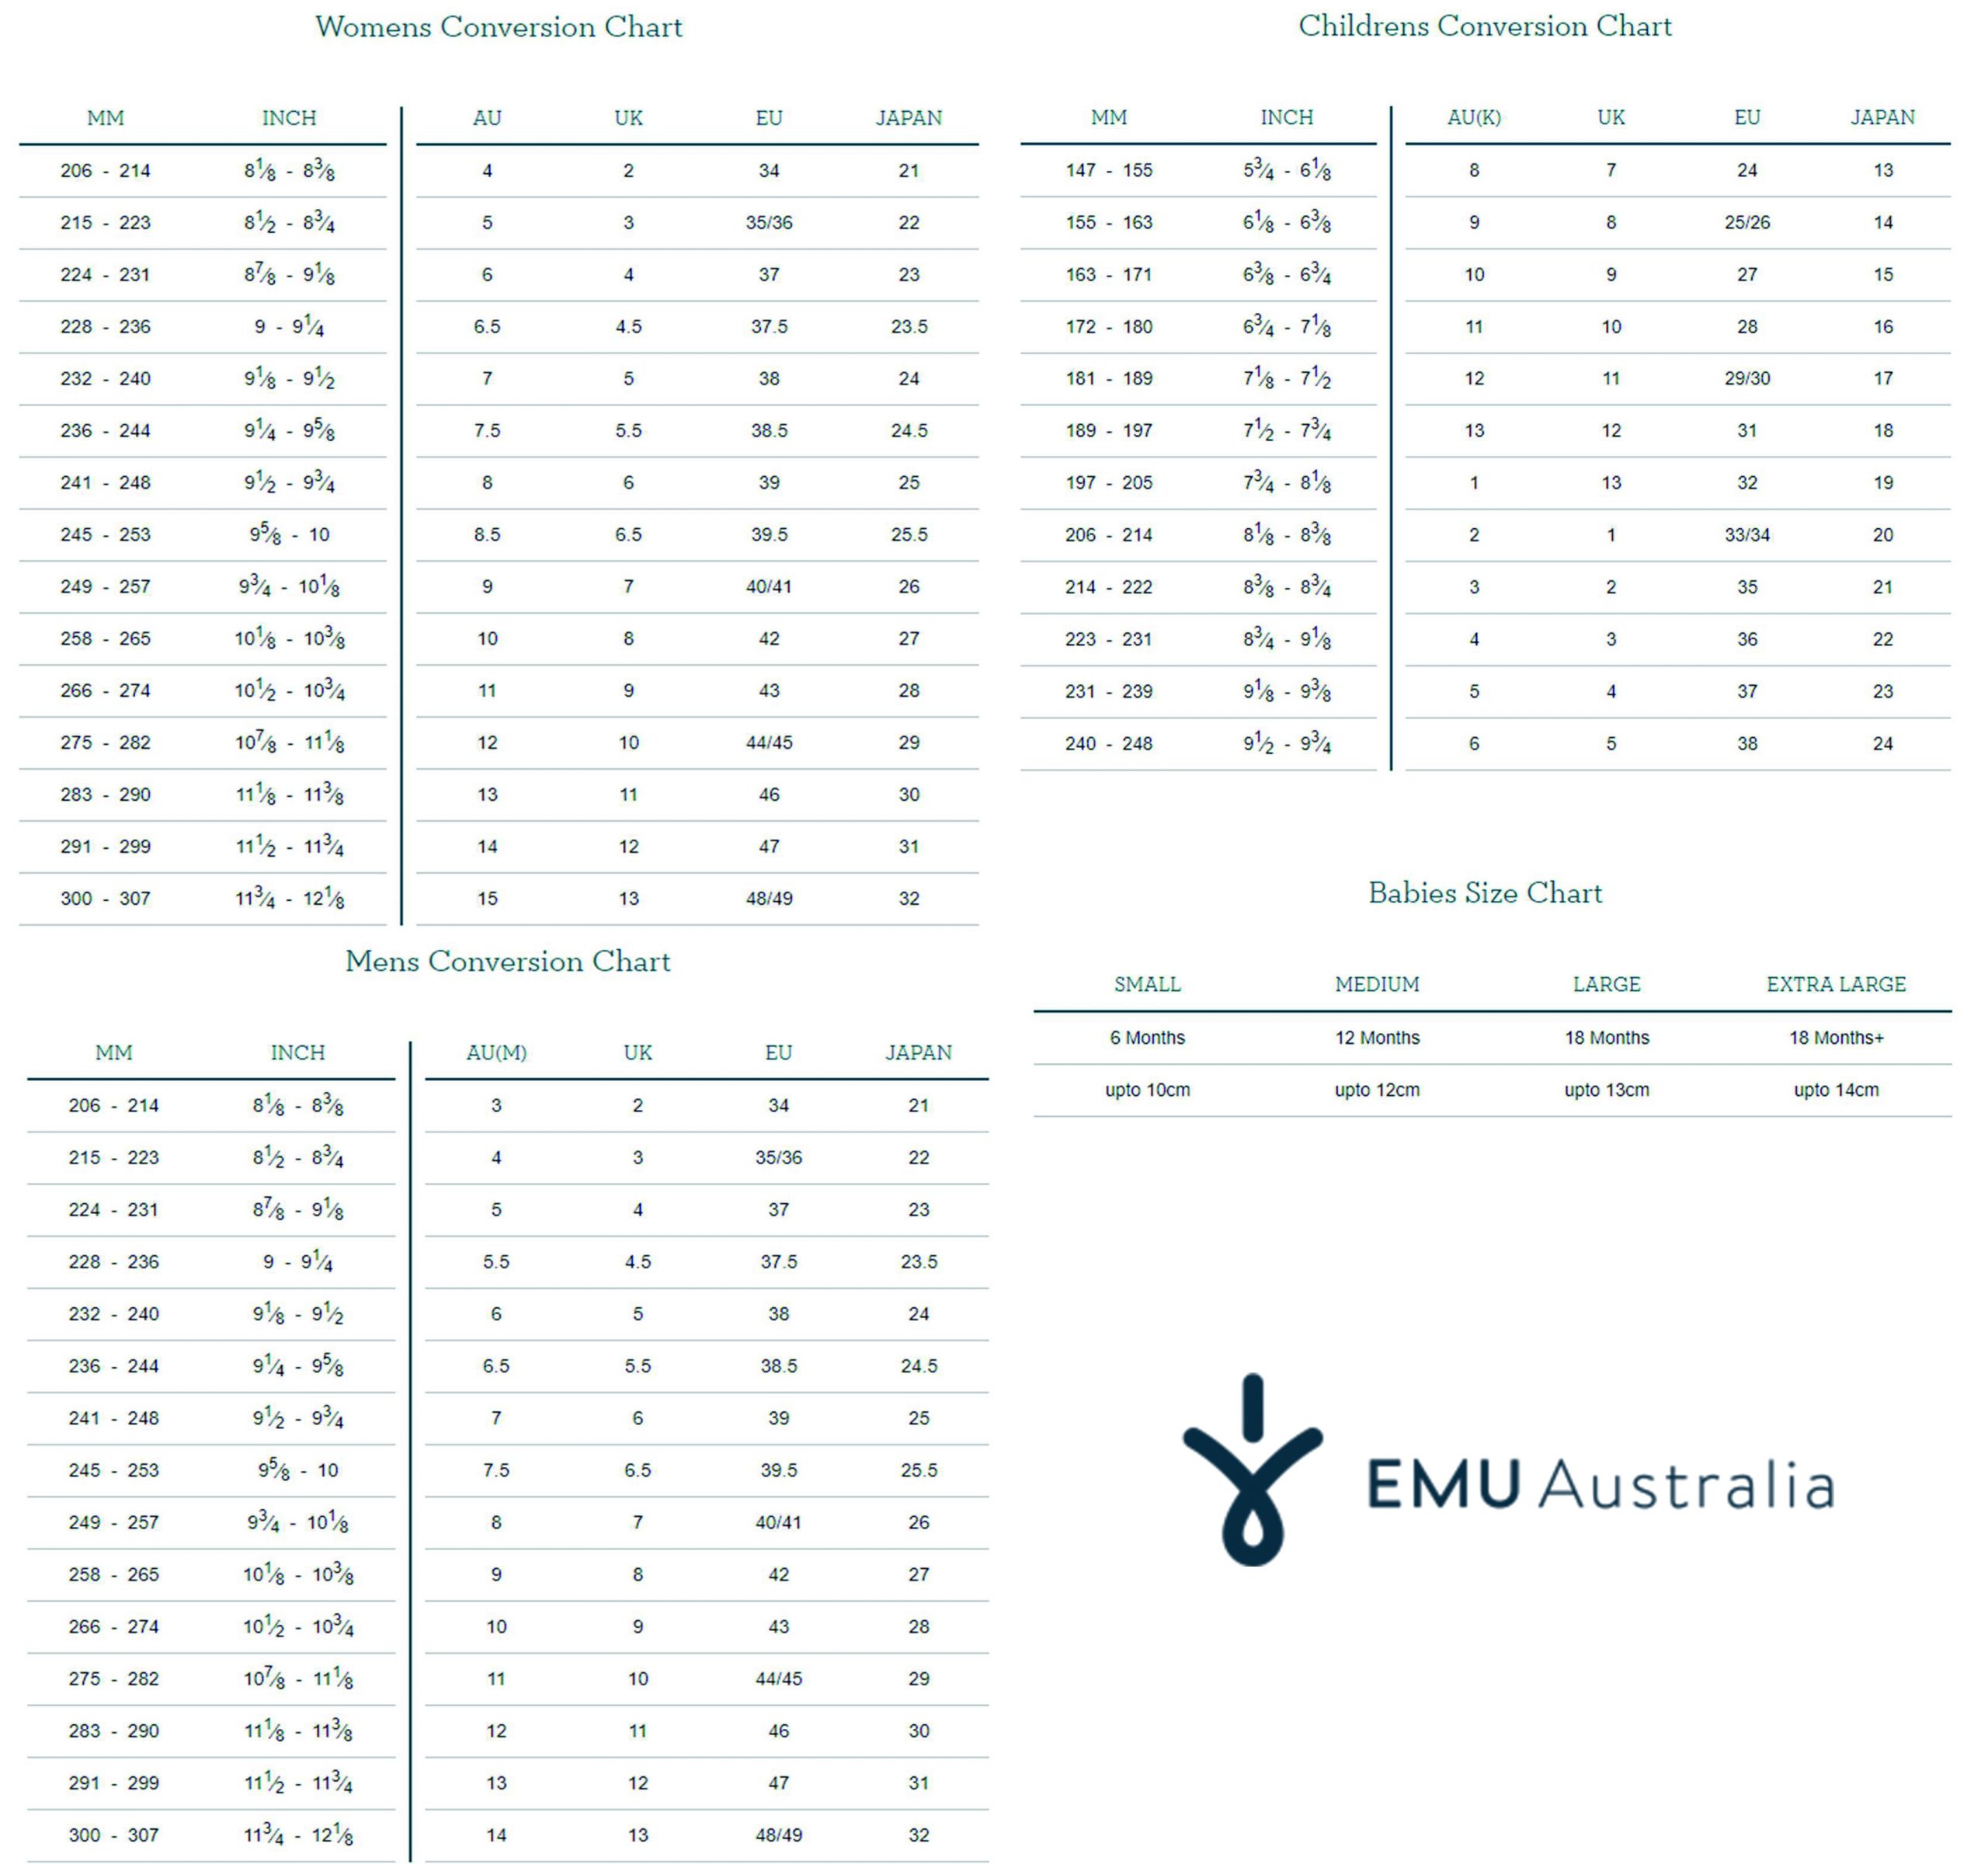 EMU Australia size chart